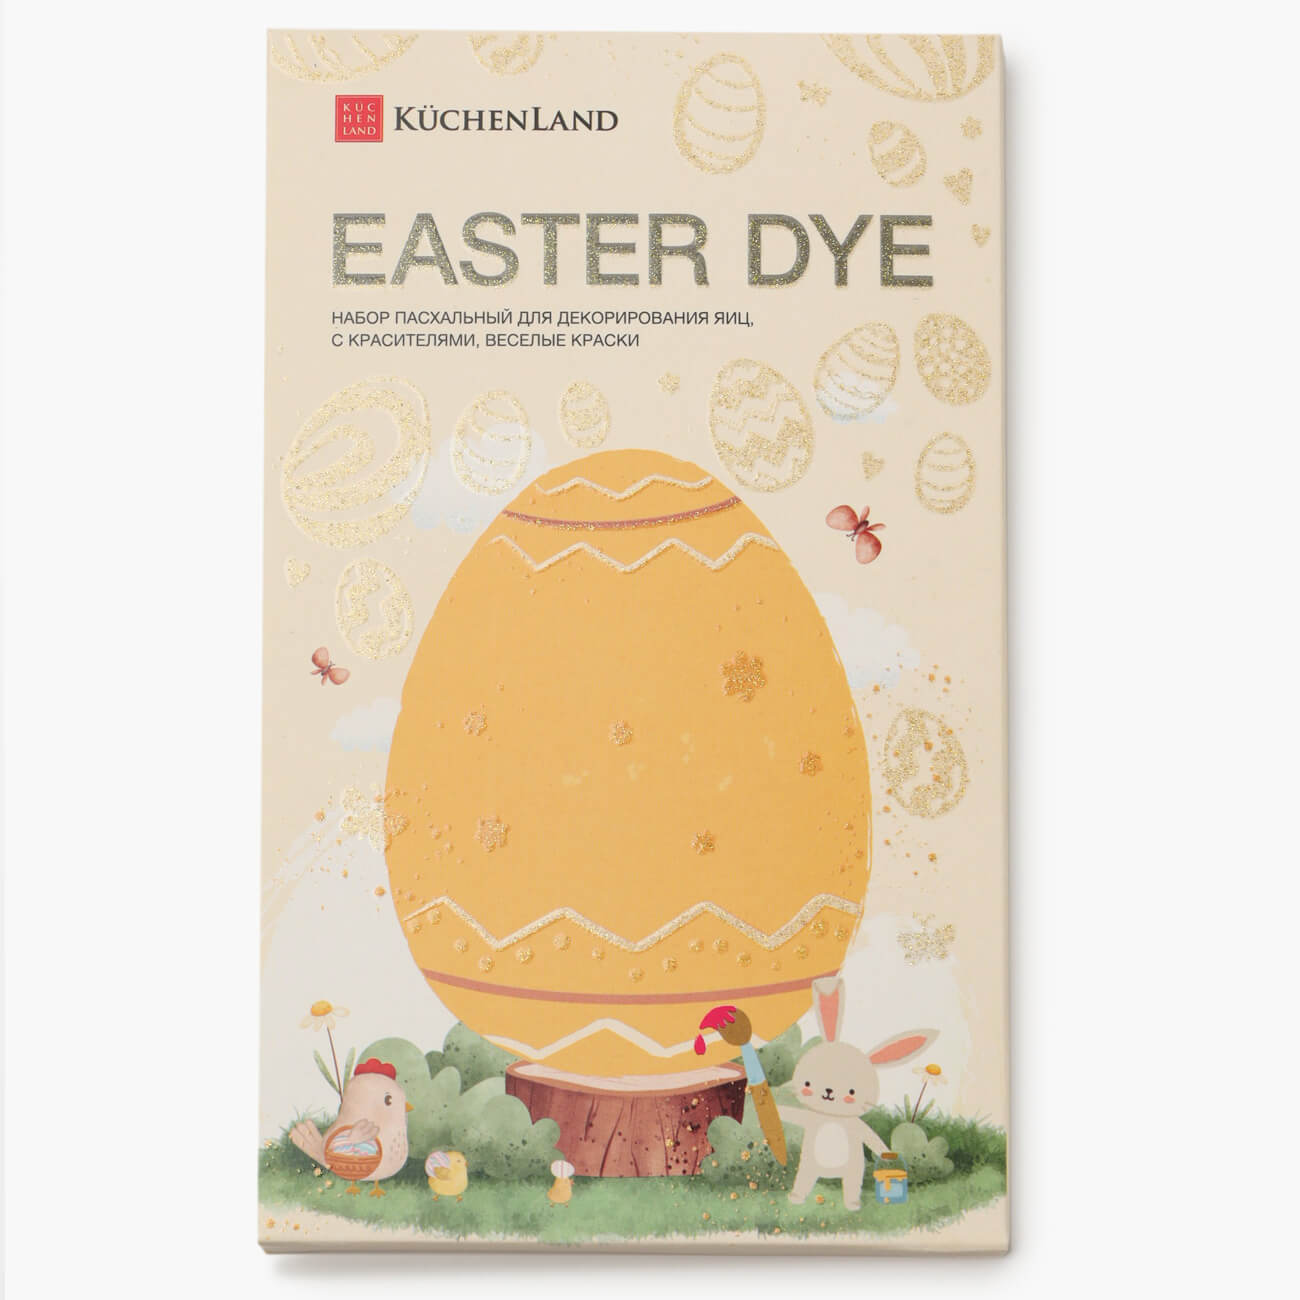 Набор пасхальный для декорирования яиц, 7 цветов/13 пр, Веселые краски, Easter dye набор приманок hybrid 2 75 7 0 см mix 5 цветов 100шт helios